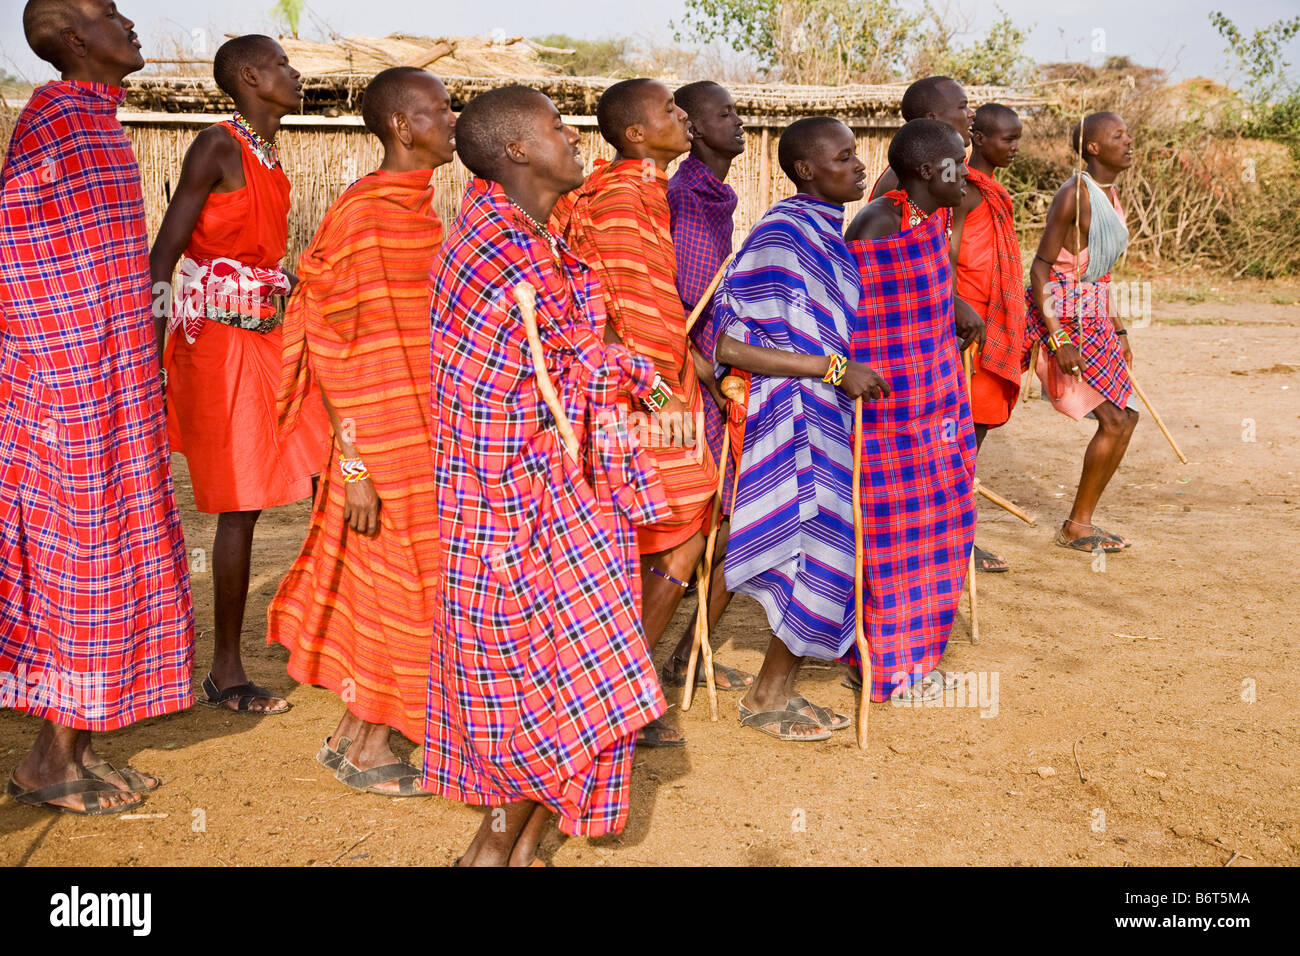 Danseurs Village près de parc Masai Mara Kenya Afrique Banque D'Images